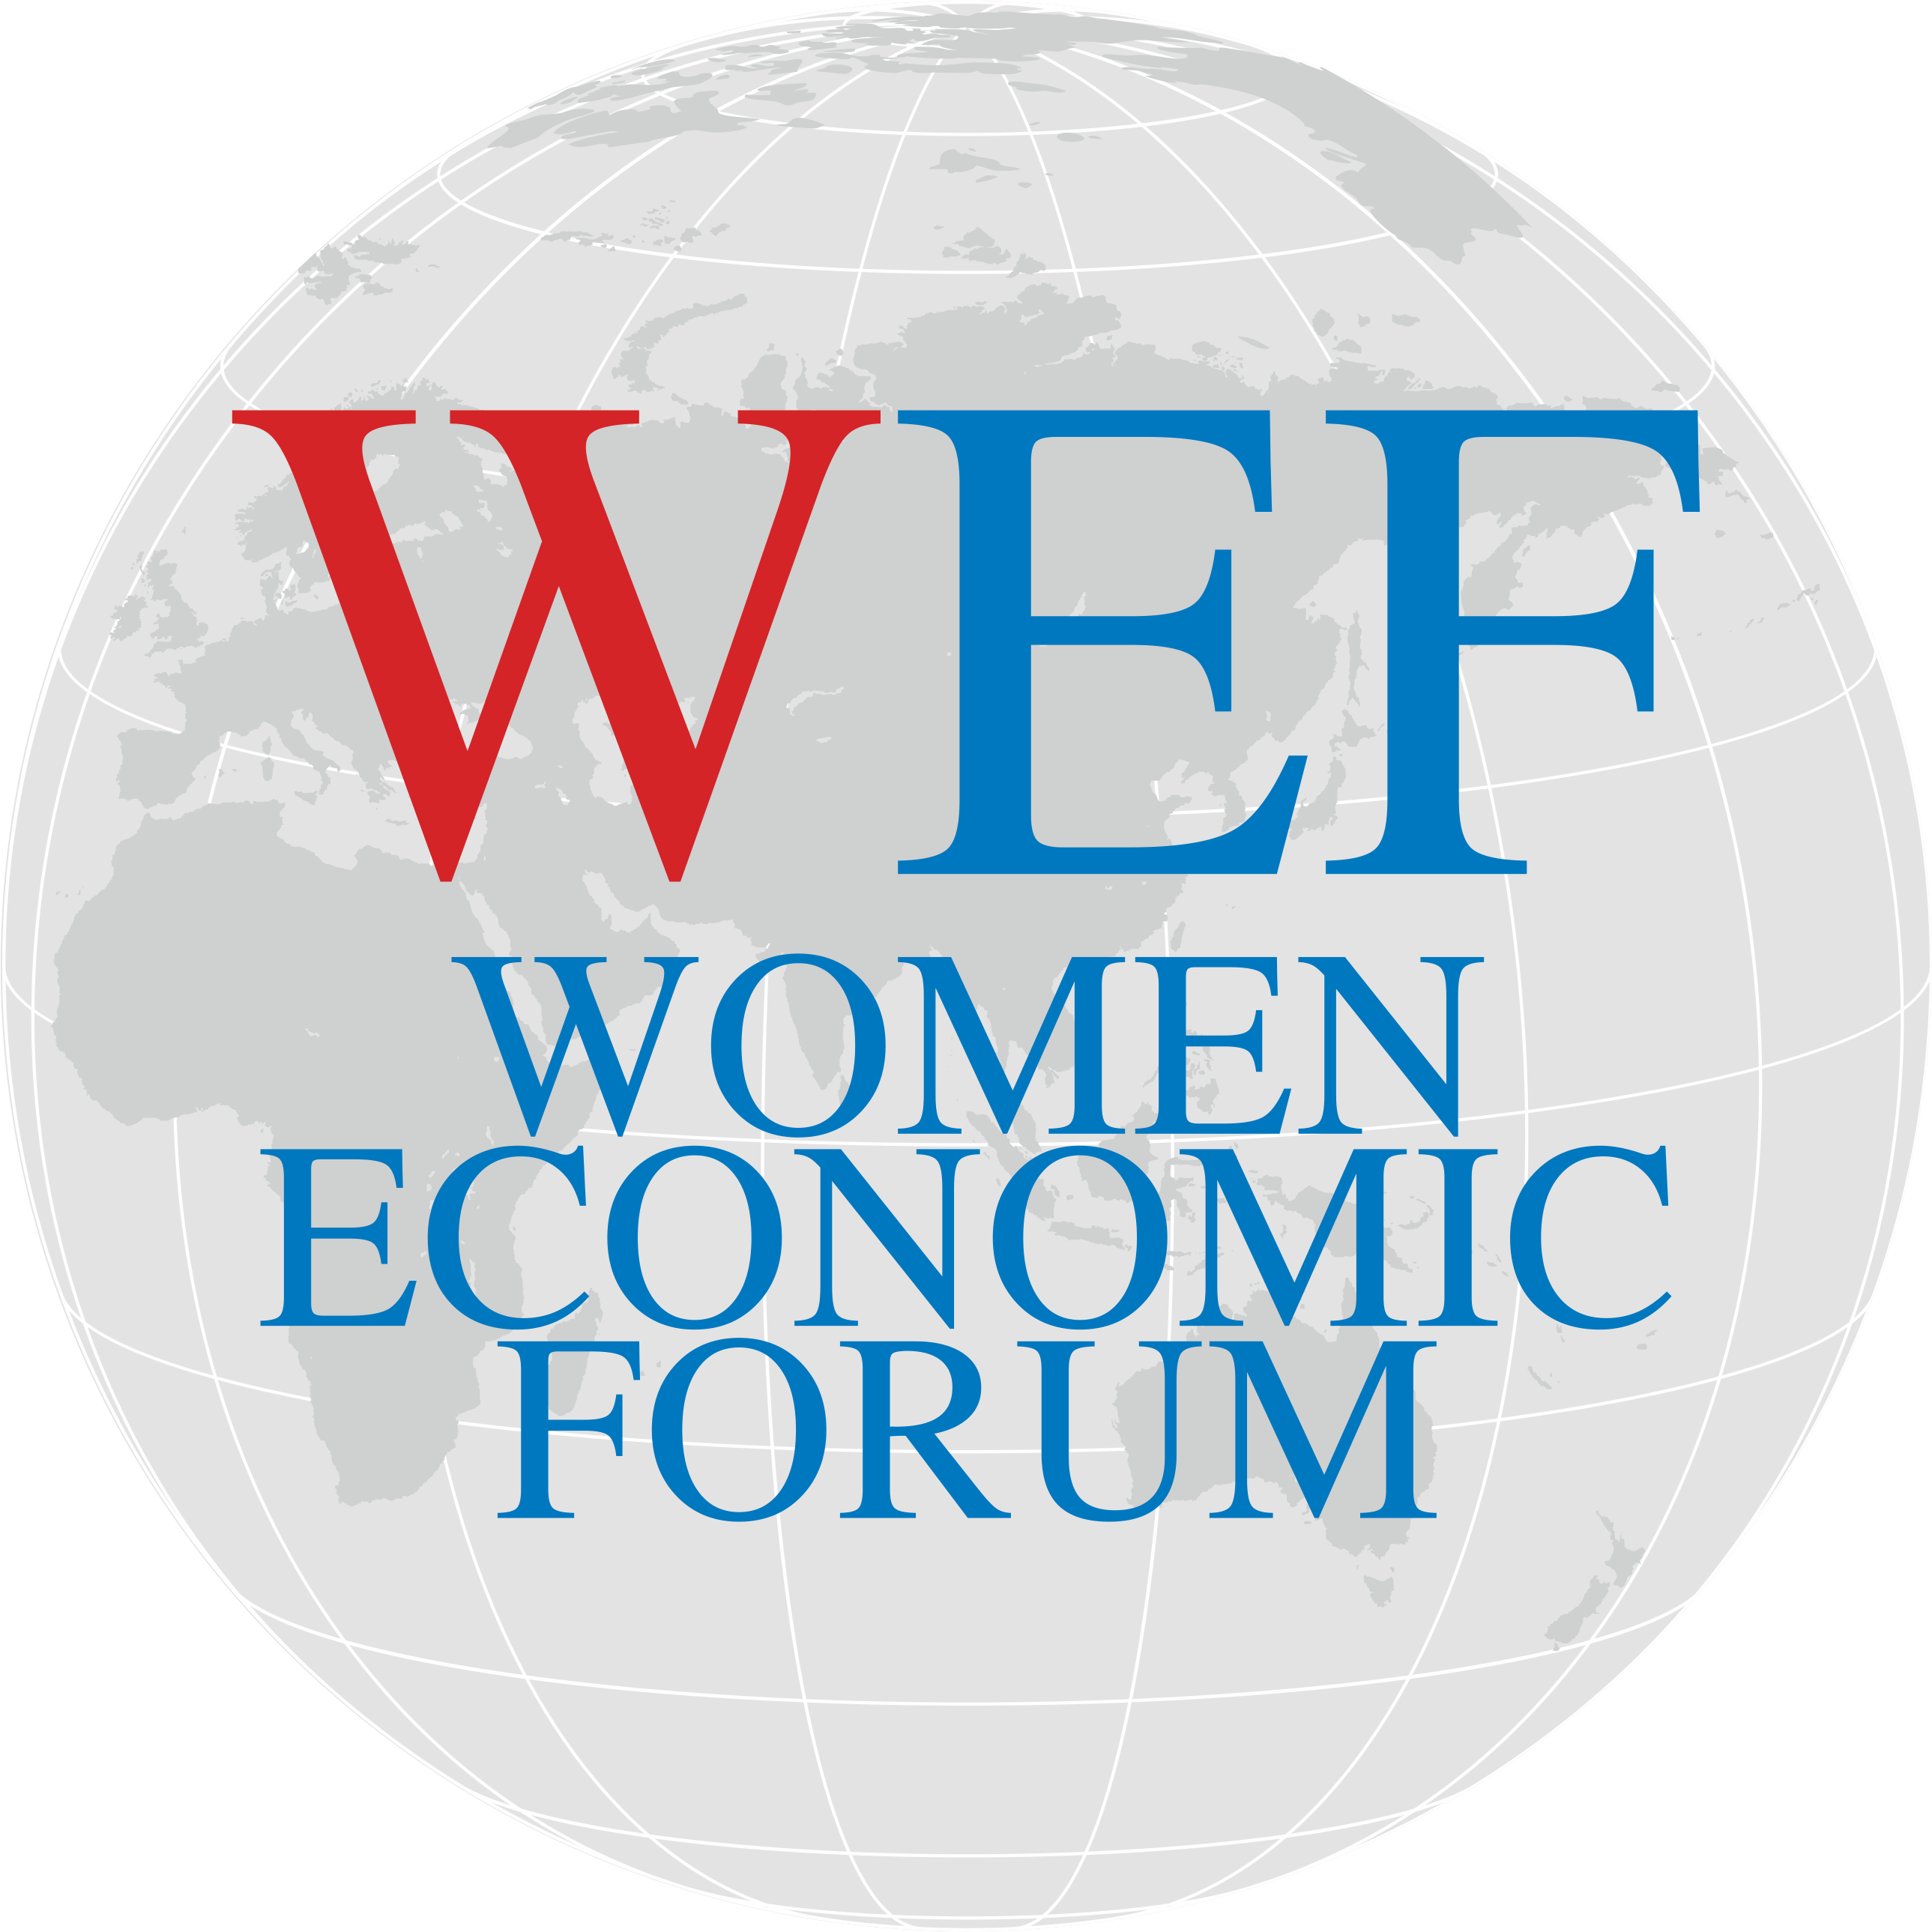 Women Economic Forum Logo Clipart (2578x2578), Png Download